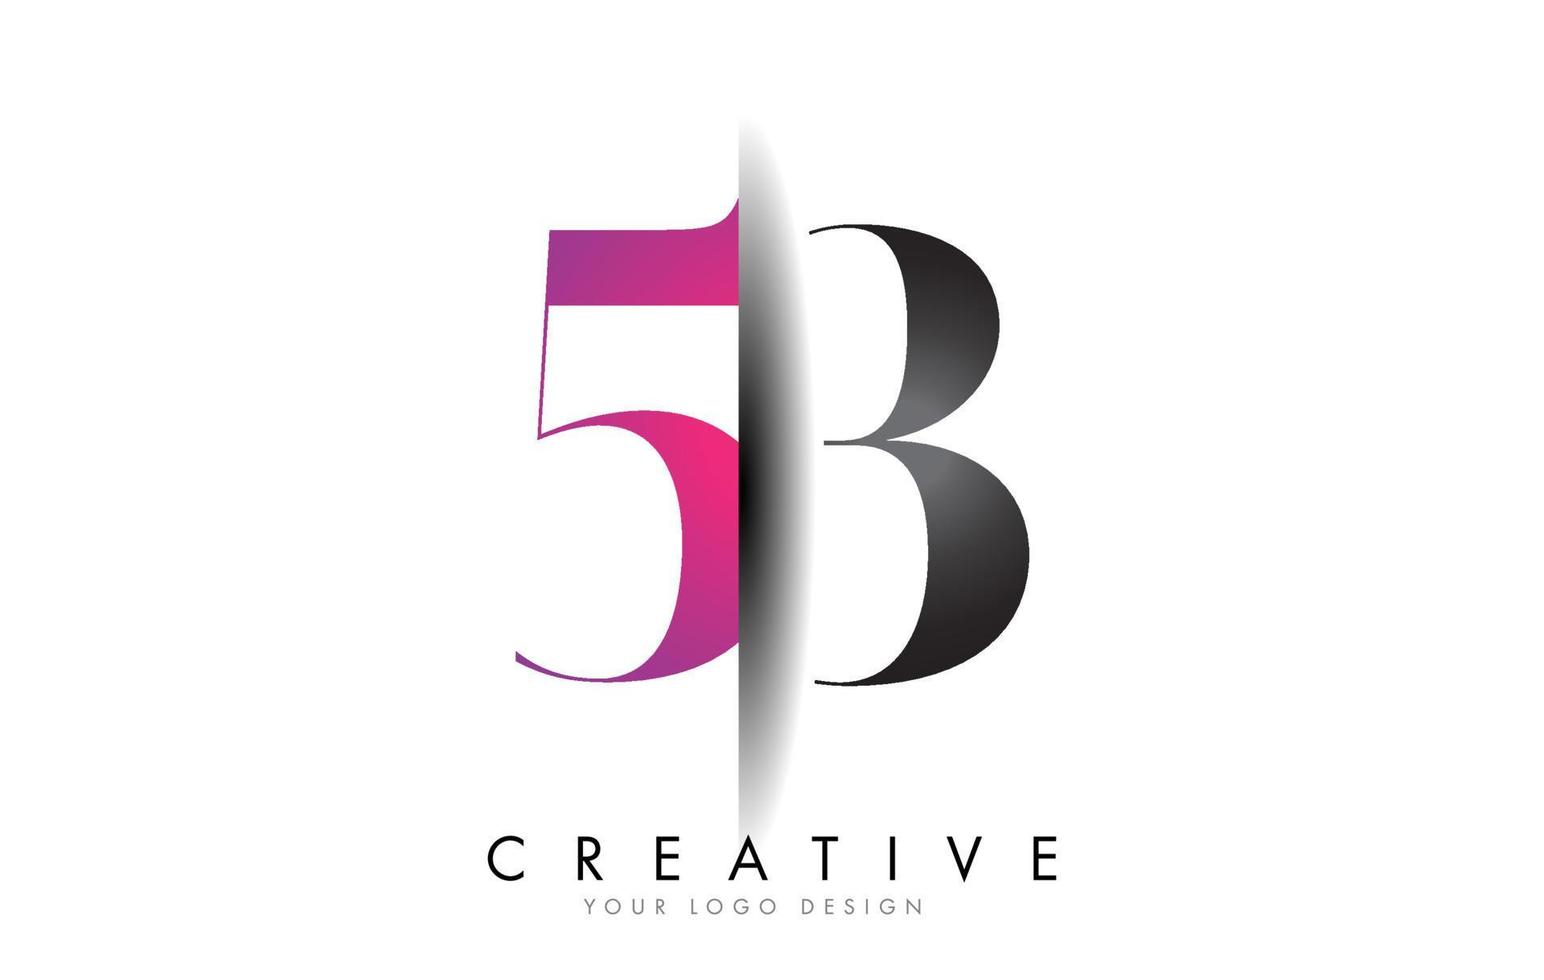 53 5 3 logo numéro gris et rose avec vecteur de coupe d'ombre créative.